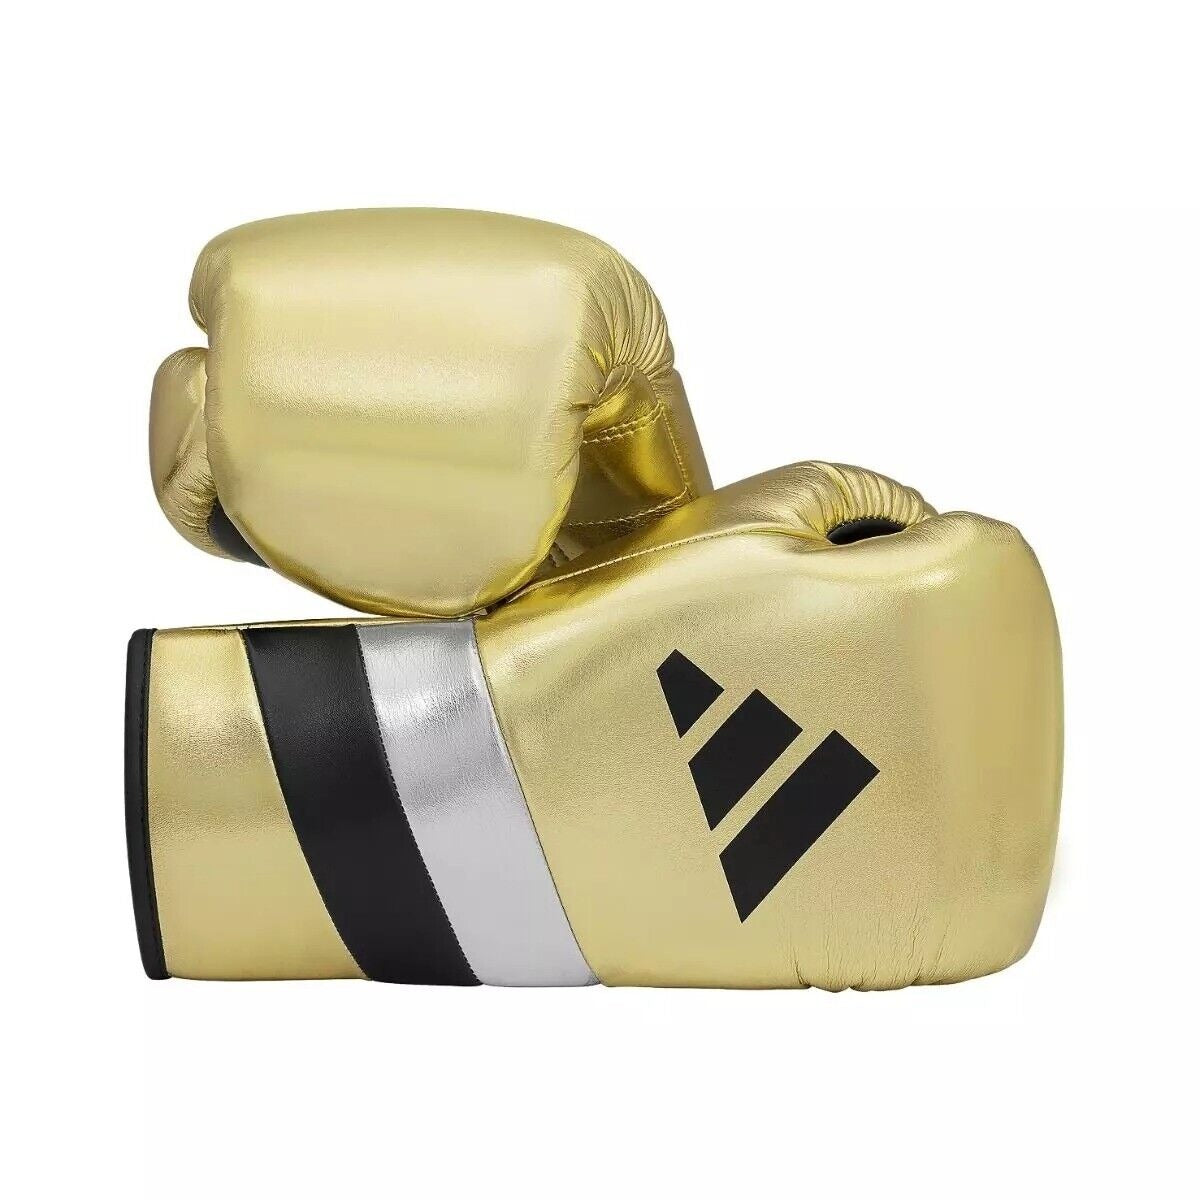 adidas AdiSpeed 500 Pro Lace Boxing Gloves